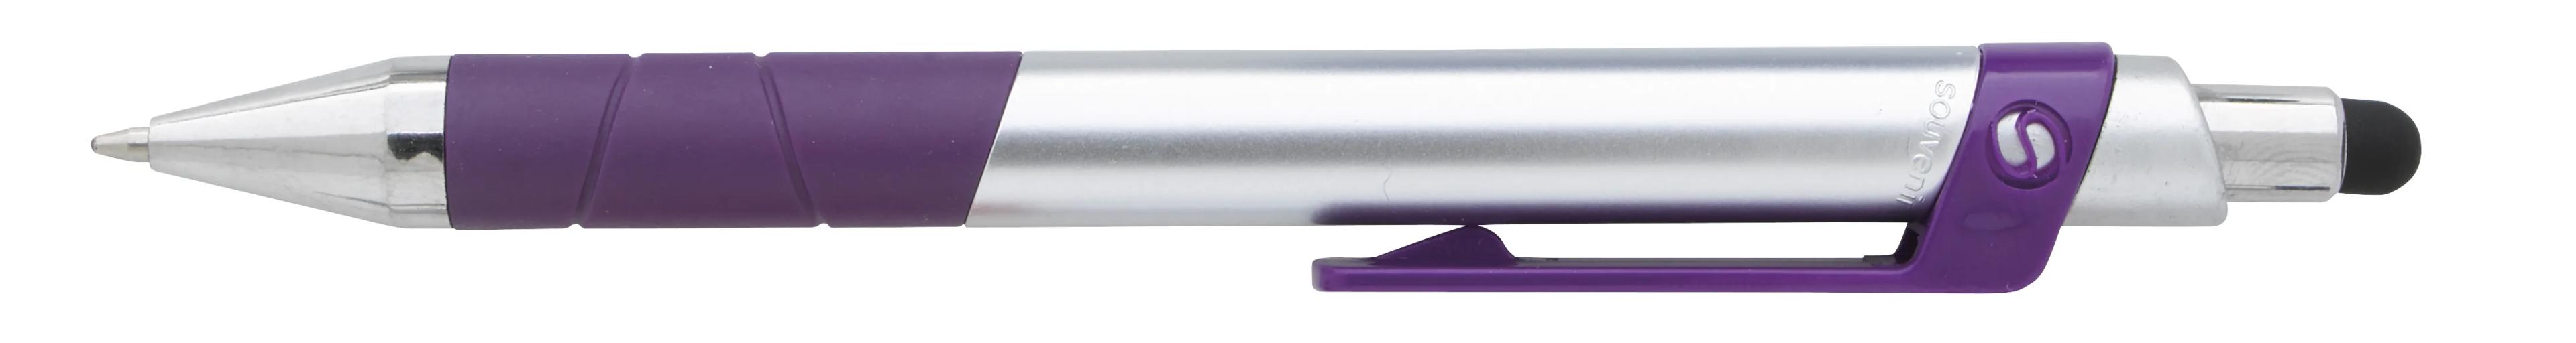 Souvenir® Rize Stylus Pen 12 of 28